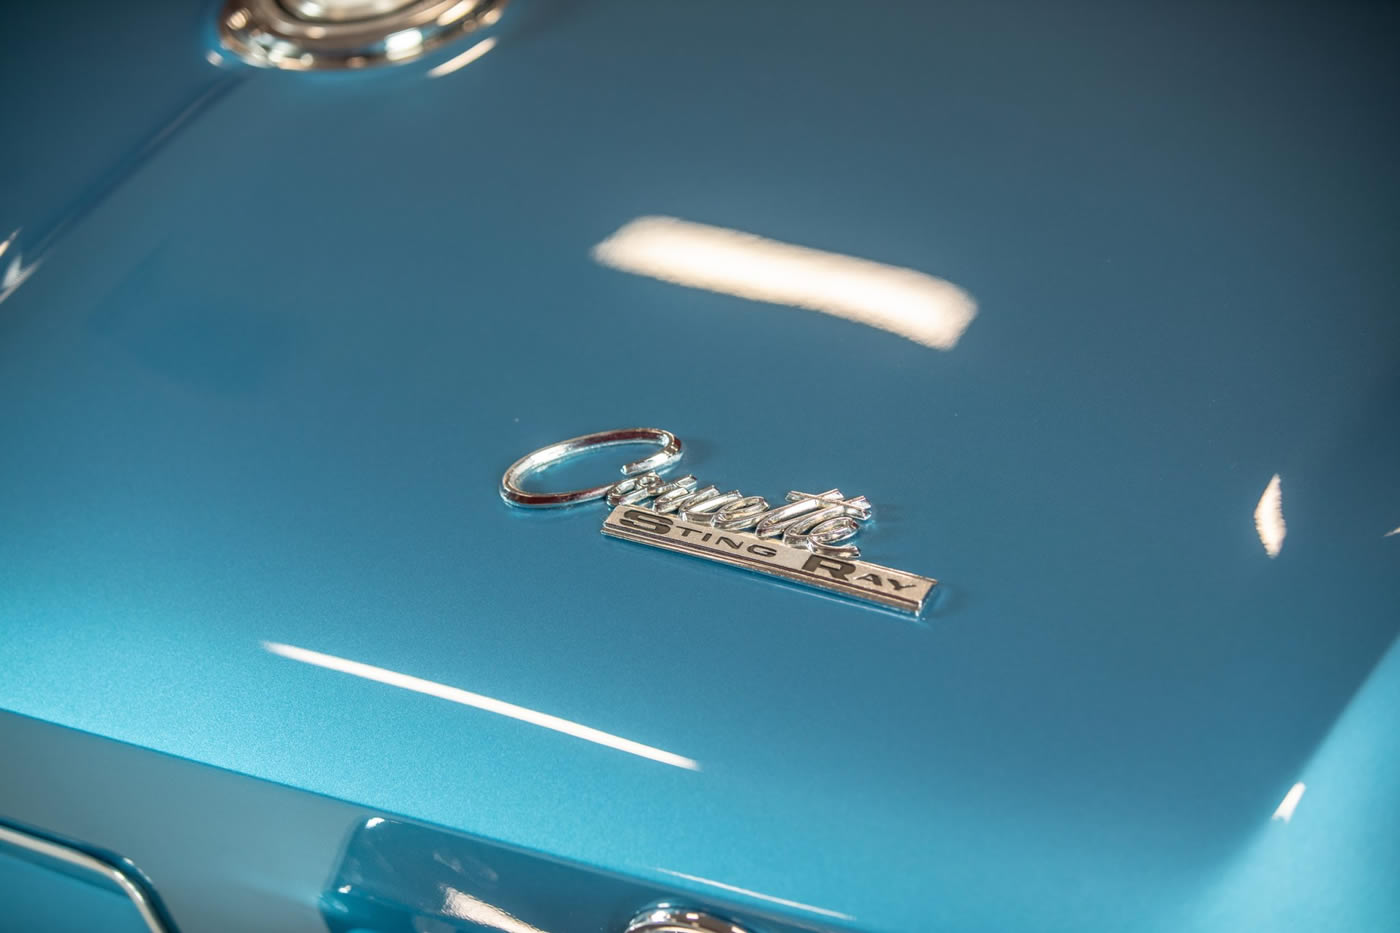 1965 Corvette Convertible L78 396/425 4-Speed in Nassau Blue